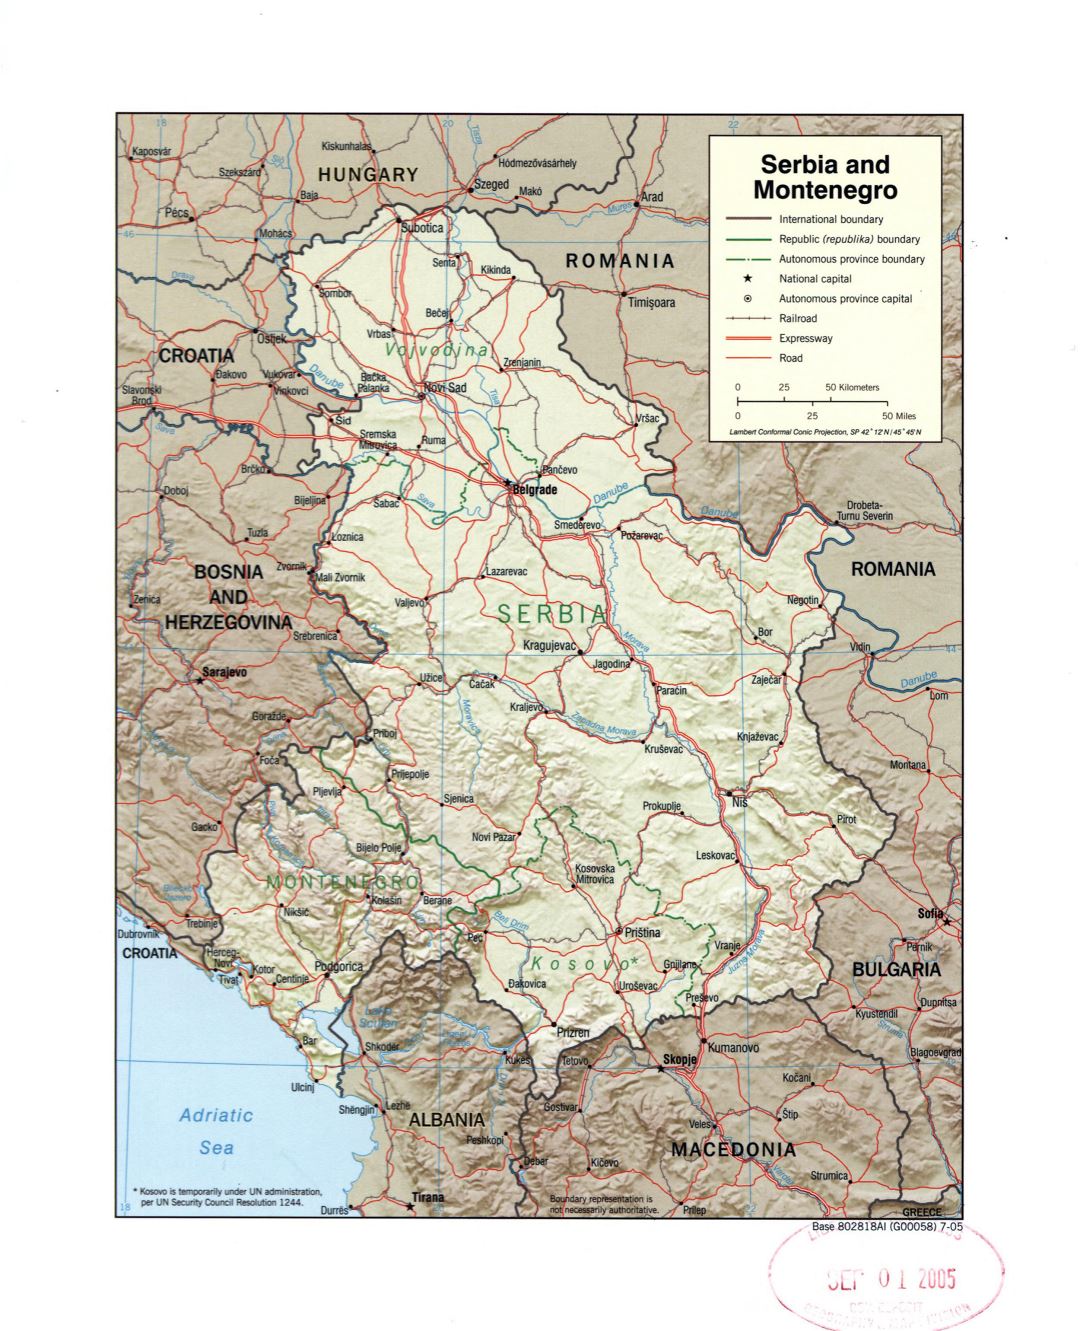 Grande detallado mapa político de Serbia y Montenegro con relieve, marcas de carreteras, ferrocarriles y grandes ciudades - 2005